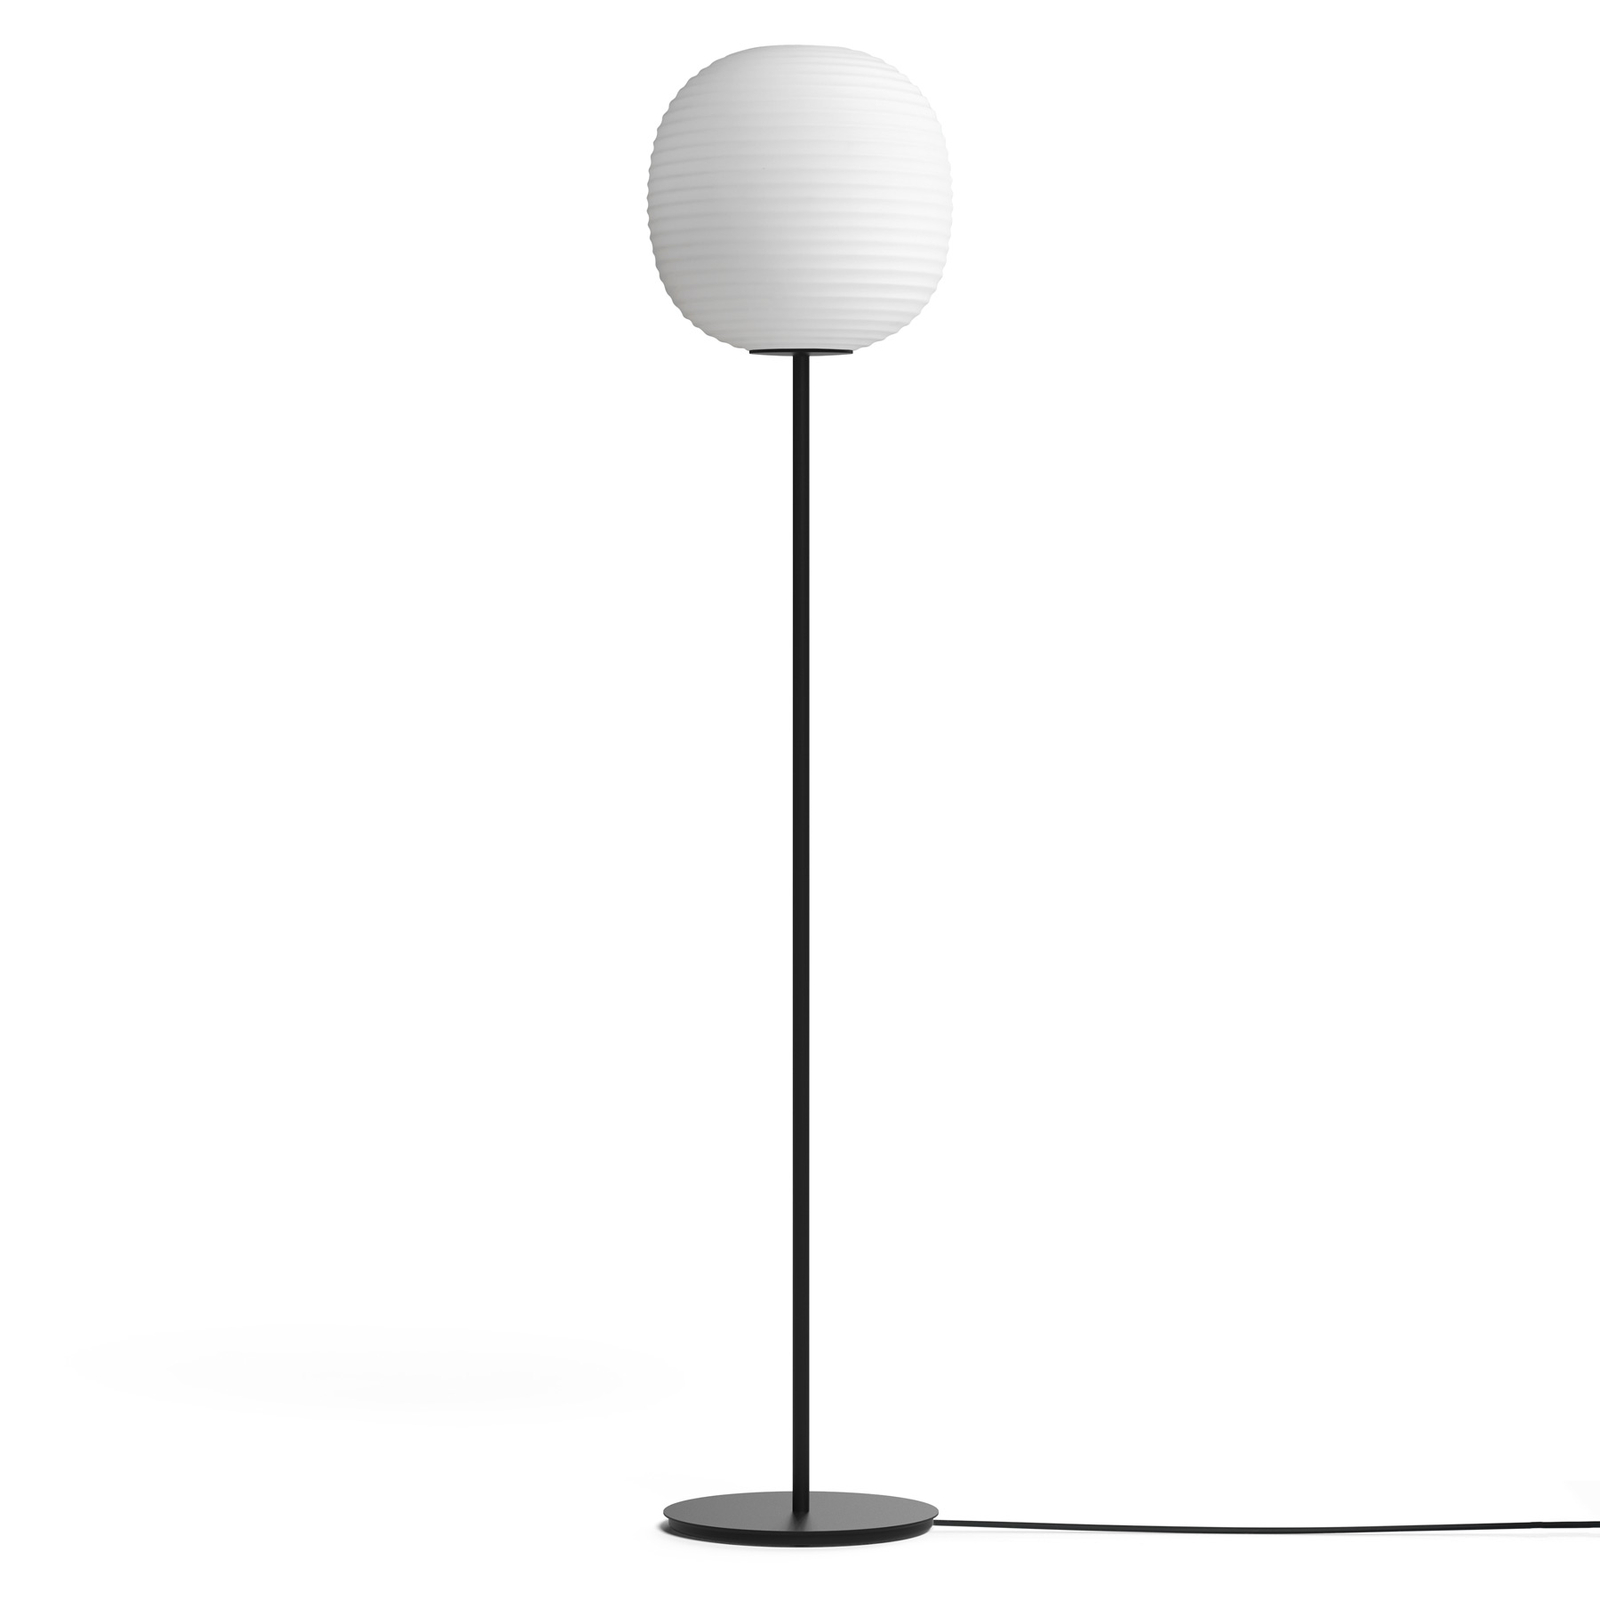 New Works Lantern Medium lampadaire, haut 150cm